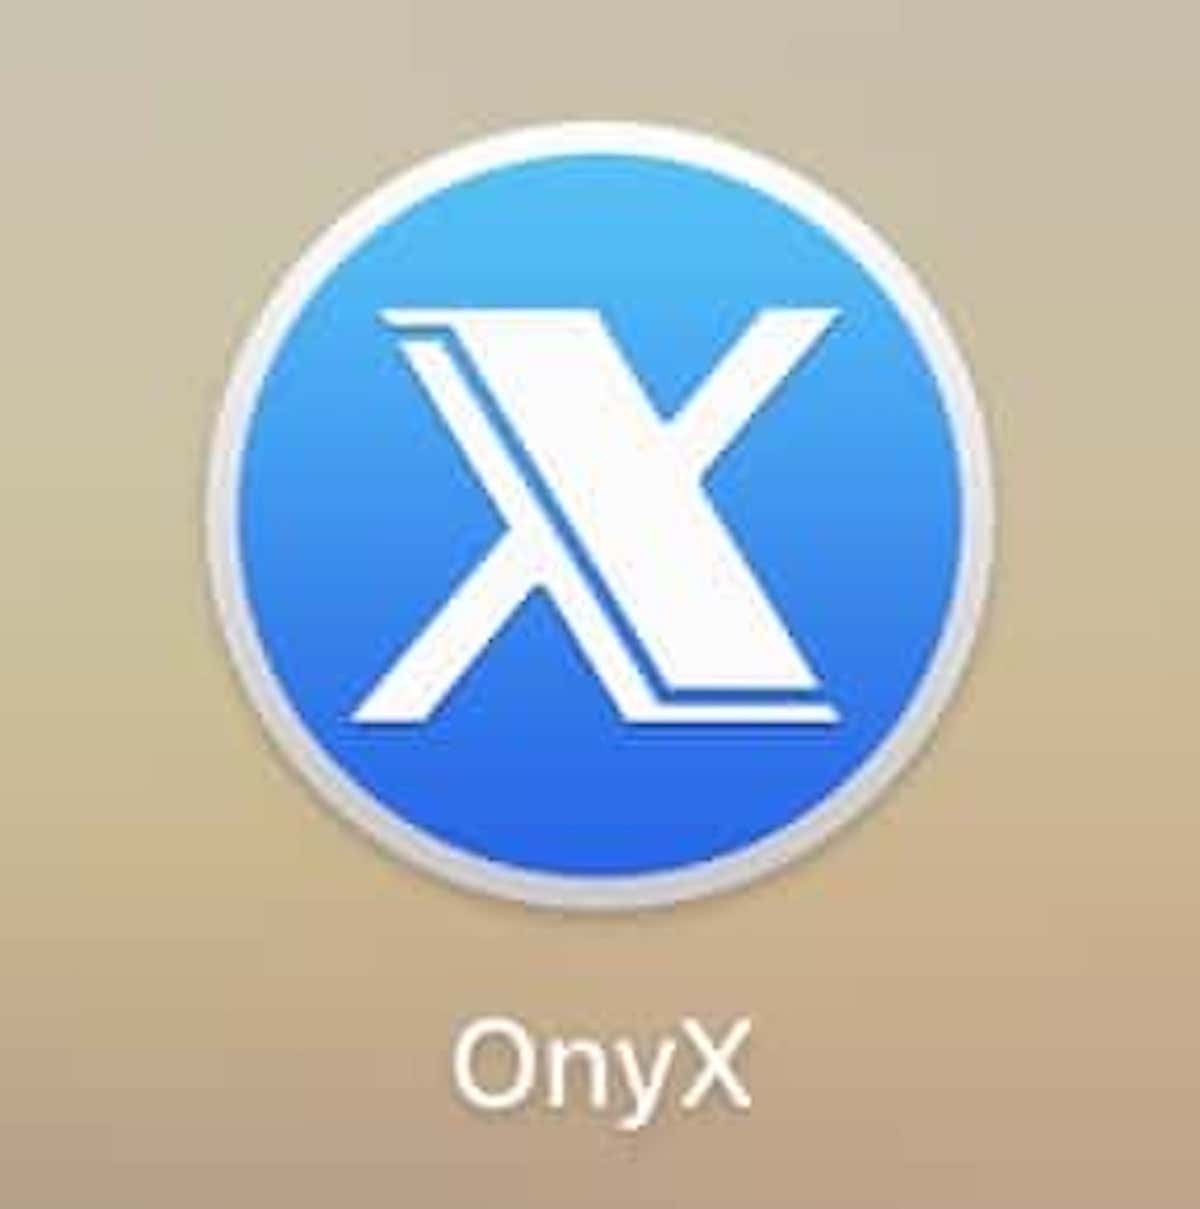 onyx mac cleaner sierra